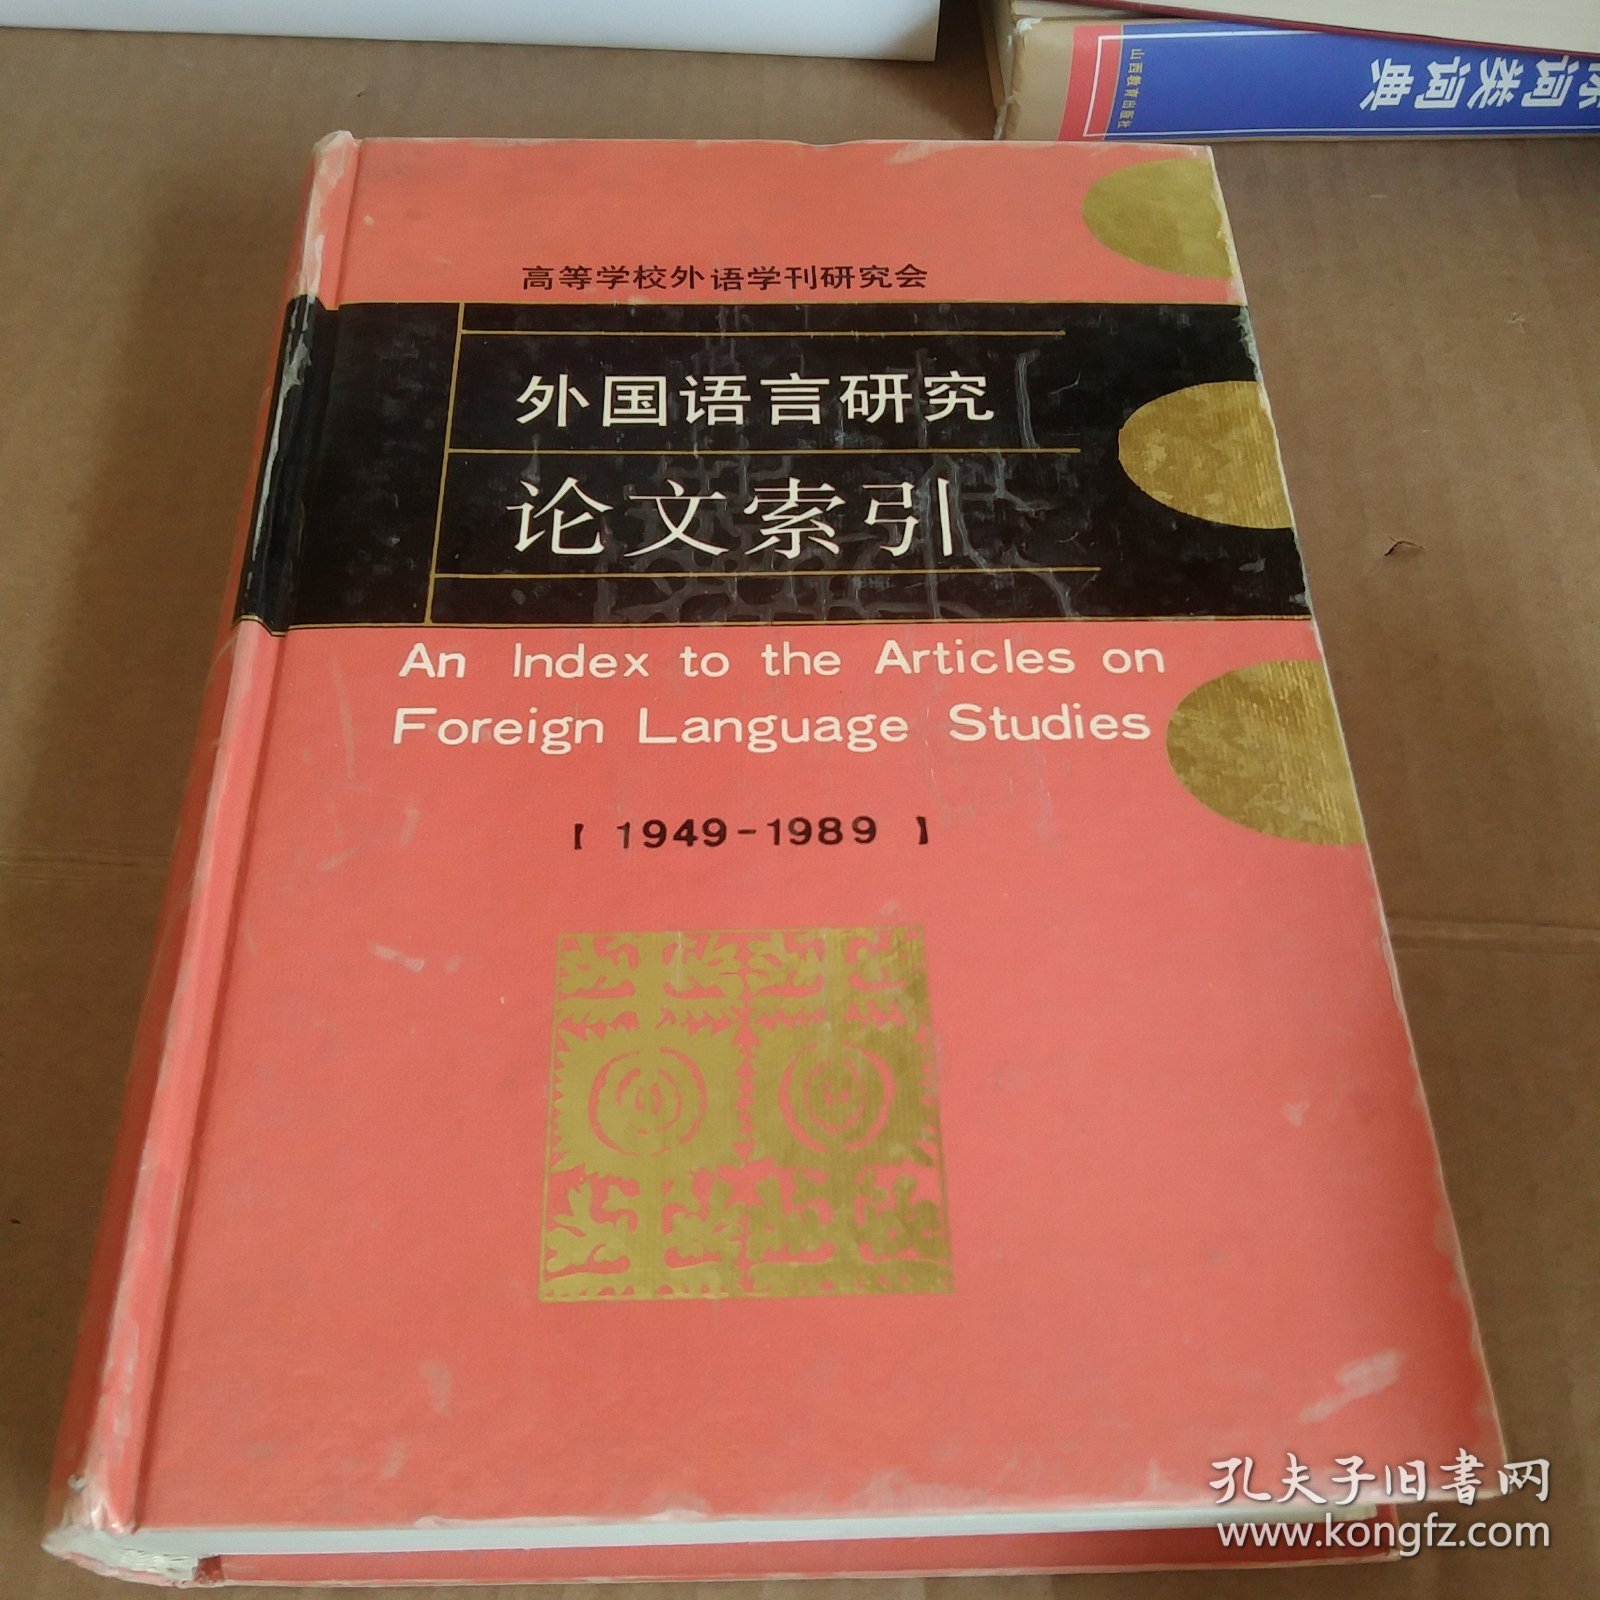 外国语言研究论文索引:1949-1989